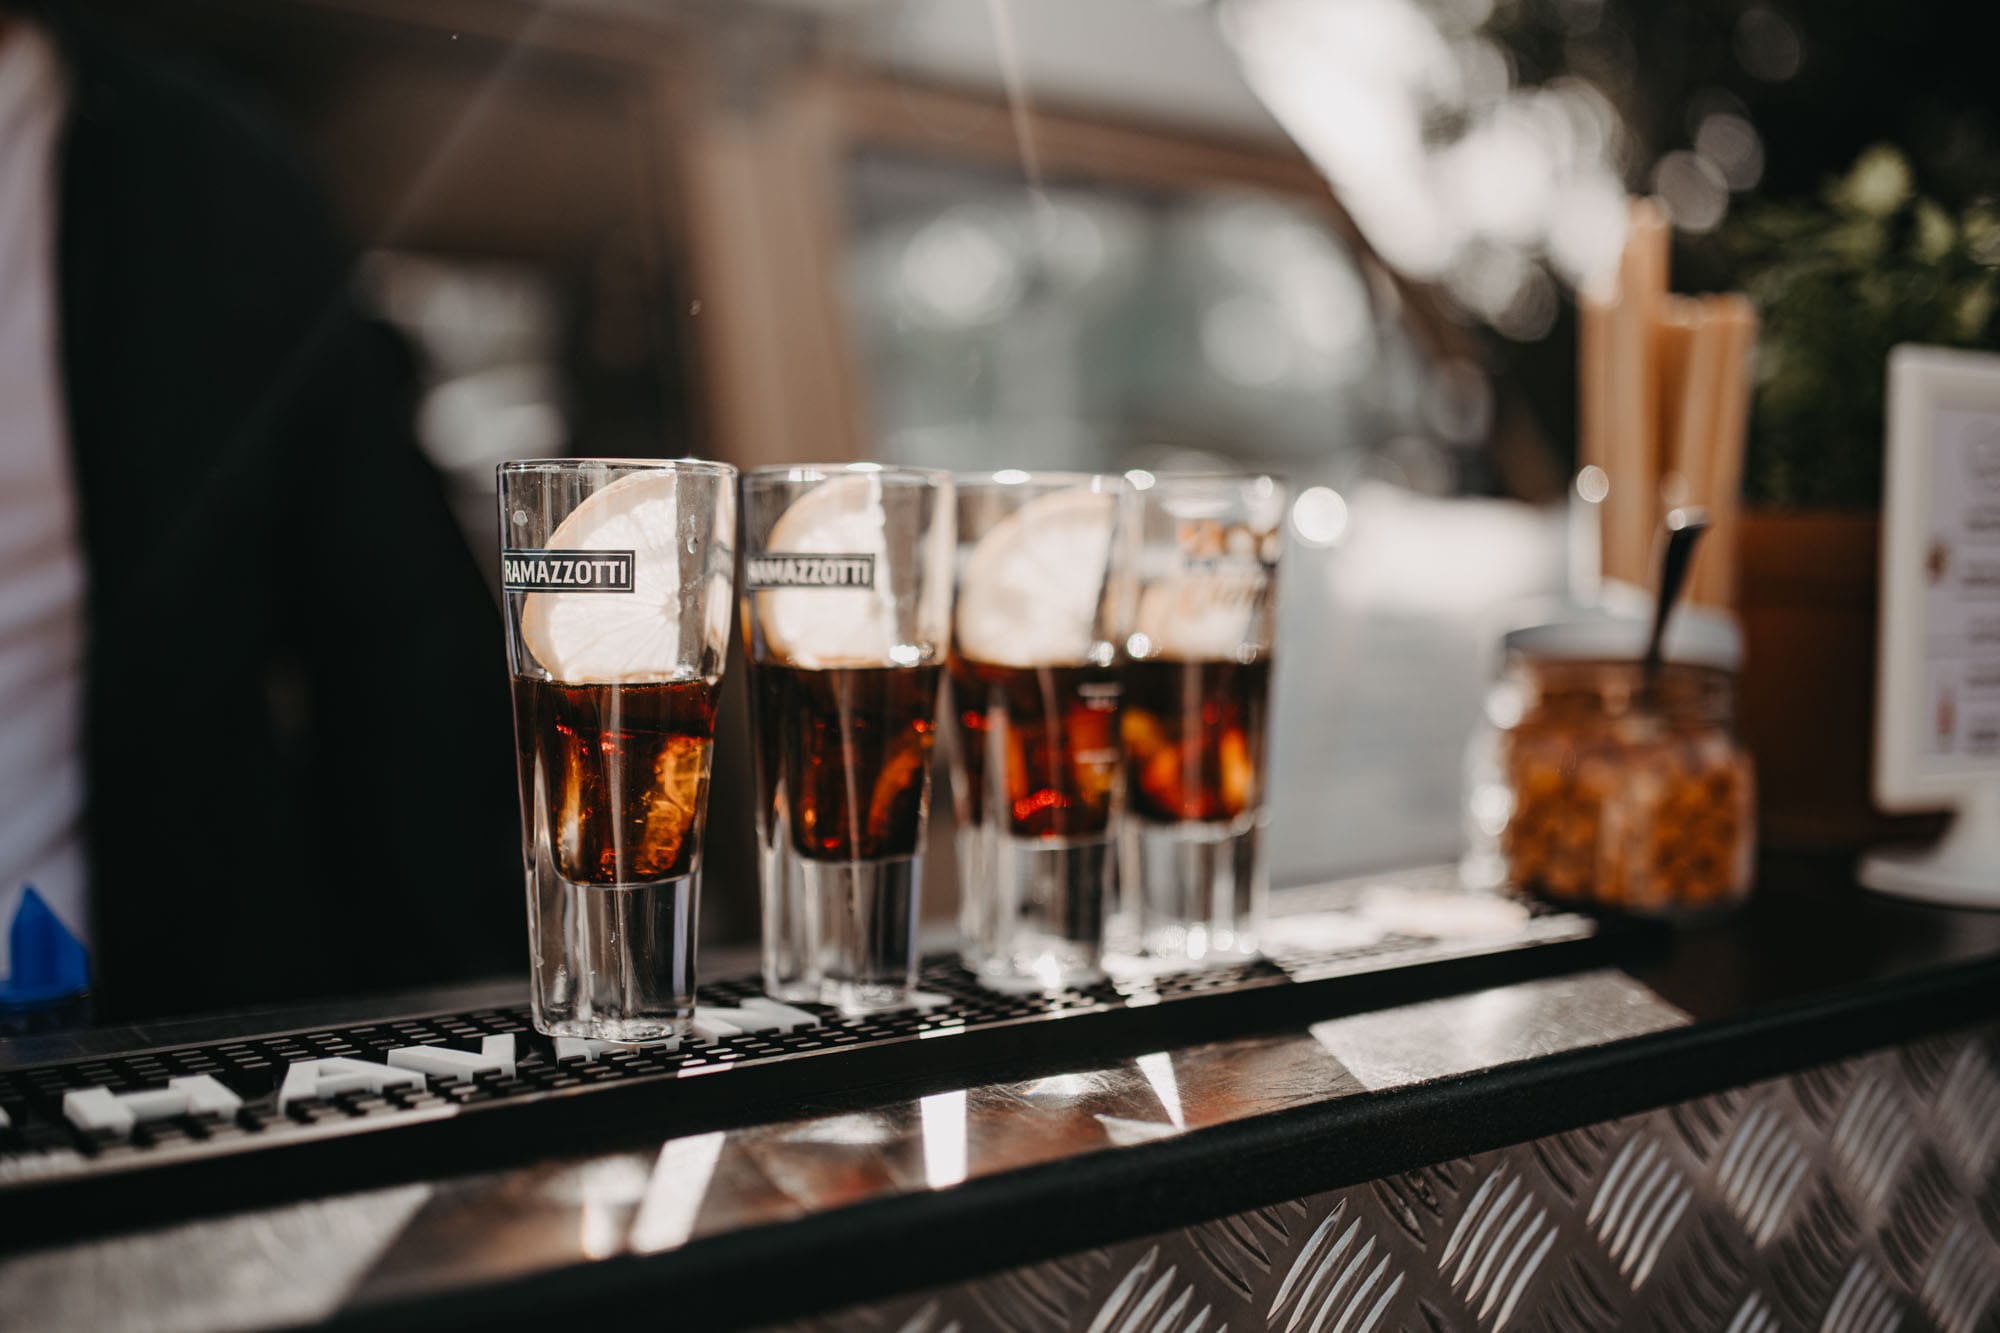 Vier gefüllte Ramazotti Gläser stehen auf der Cocktail Bar und werden von den Sonne angestrahlt.